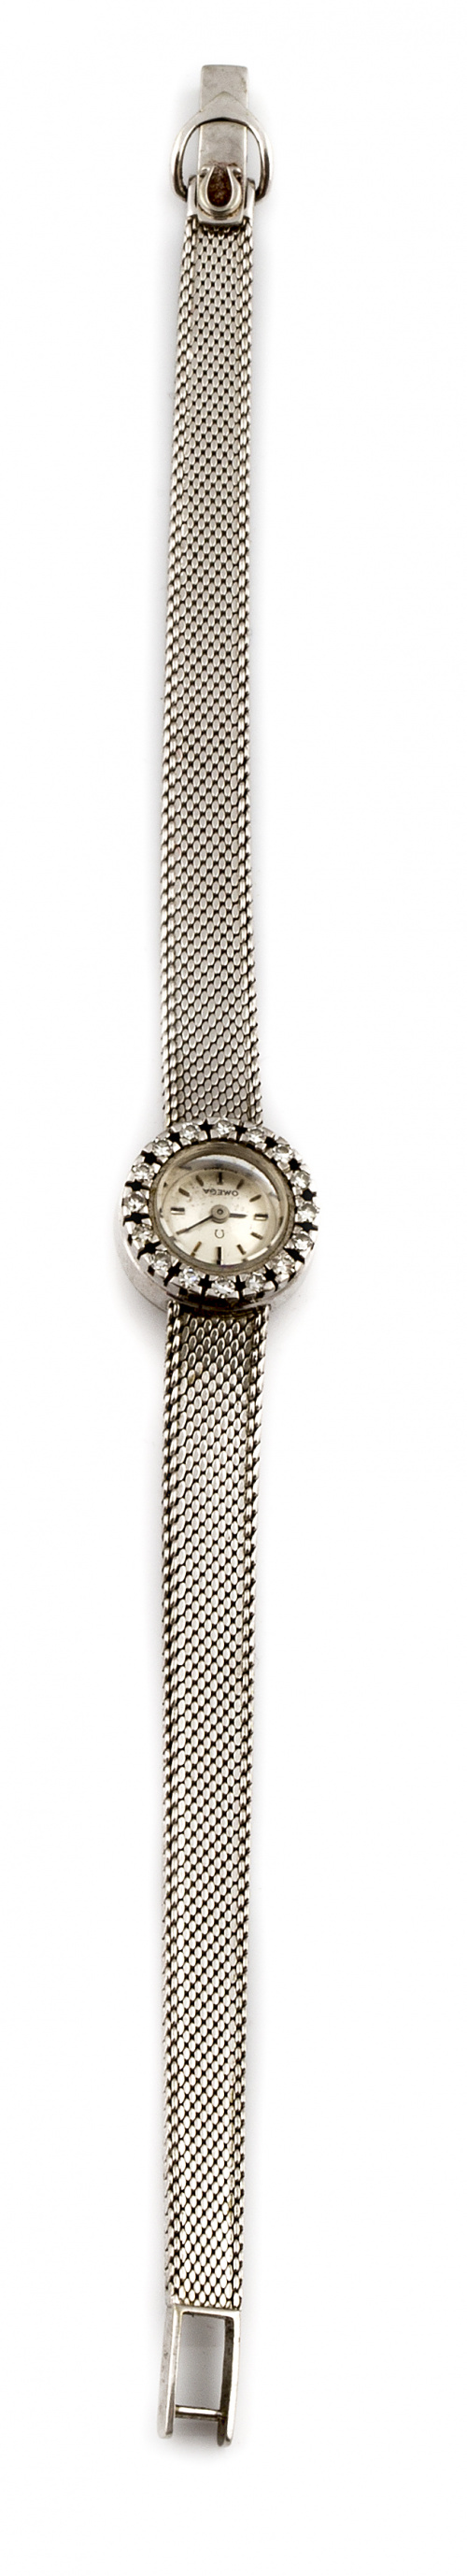 Reloj OMEGA de pulsera sra años 60 en oro blanco de 18K y b